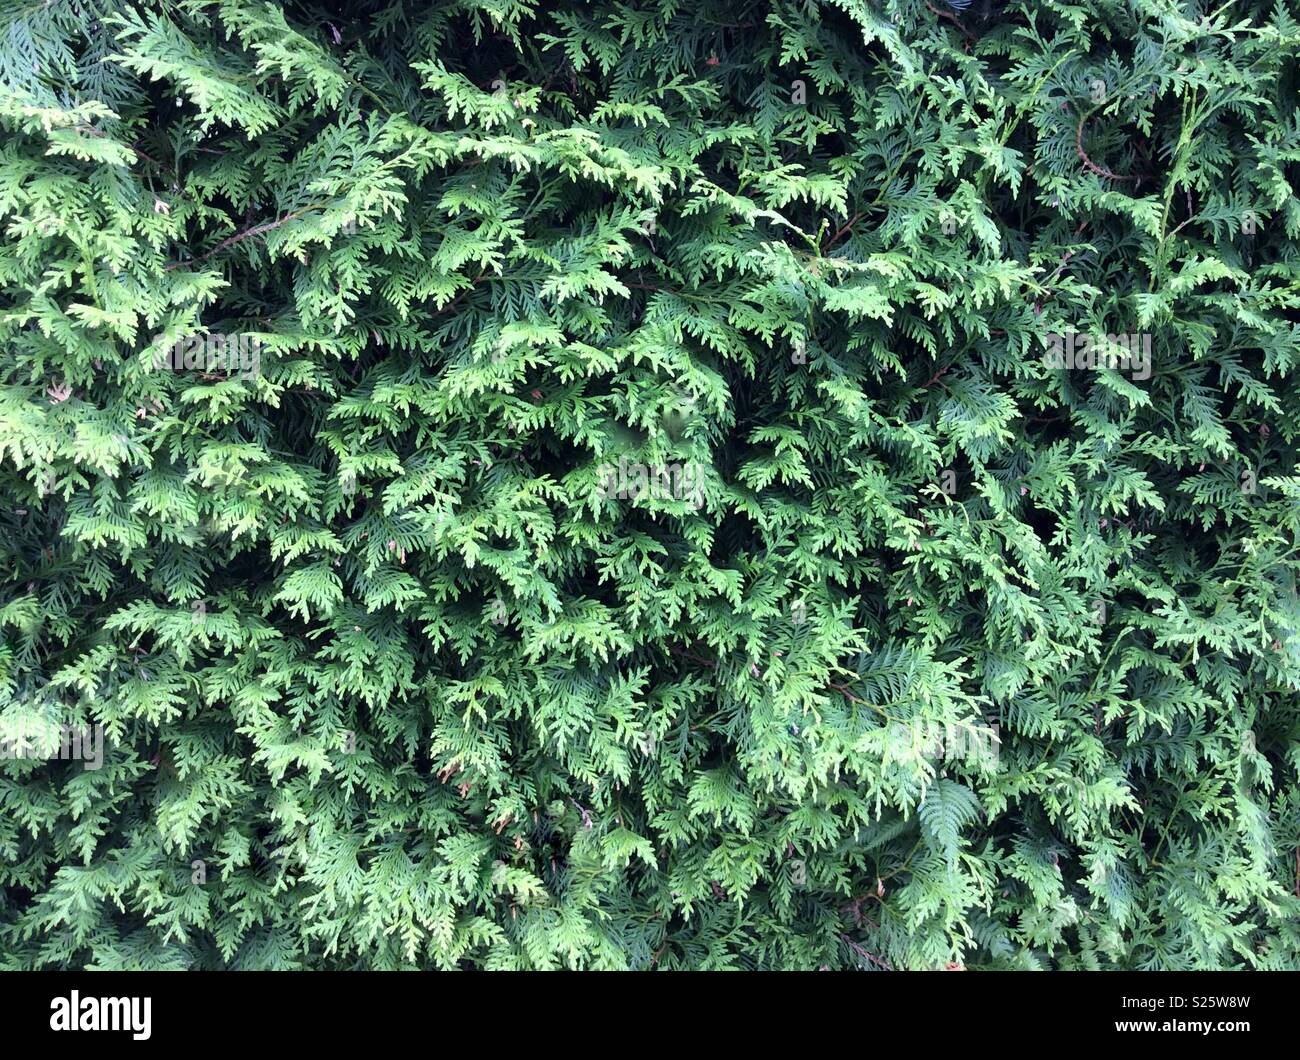 Formt orizzontale immagine di thuja hedge Foto Stock